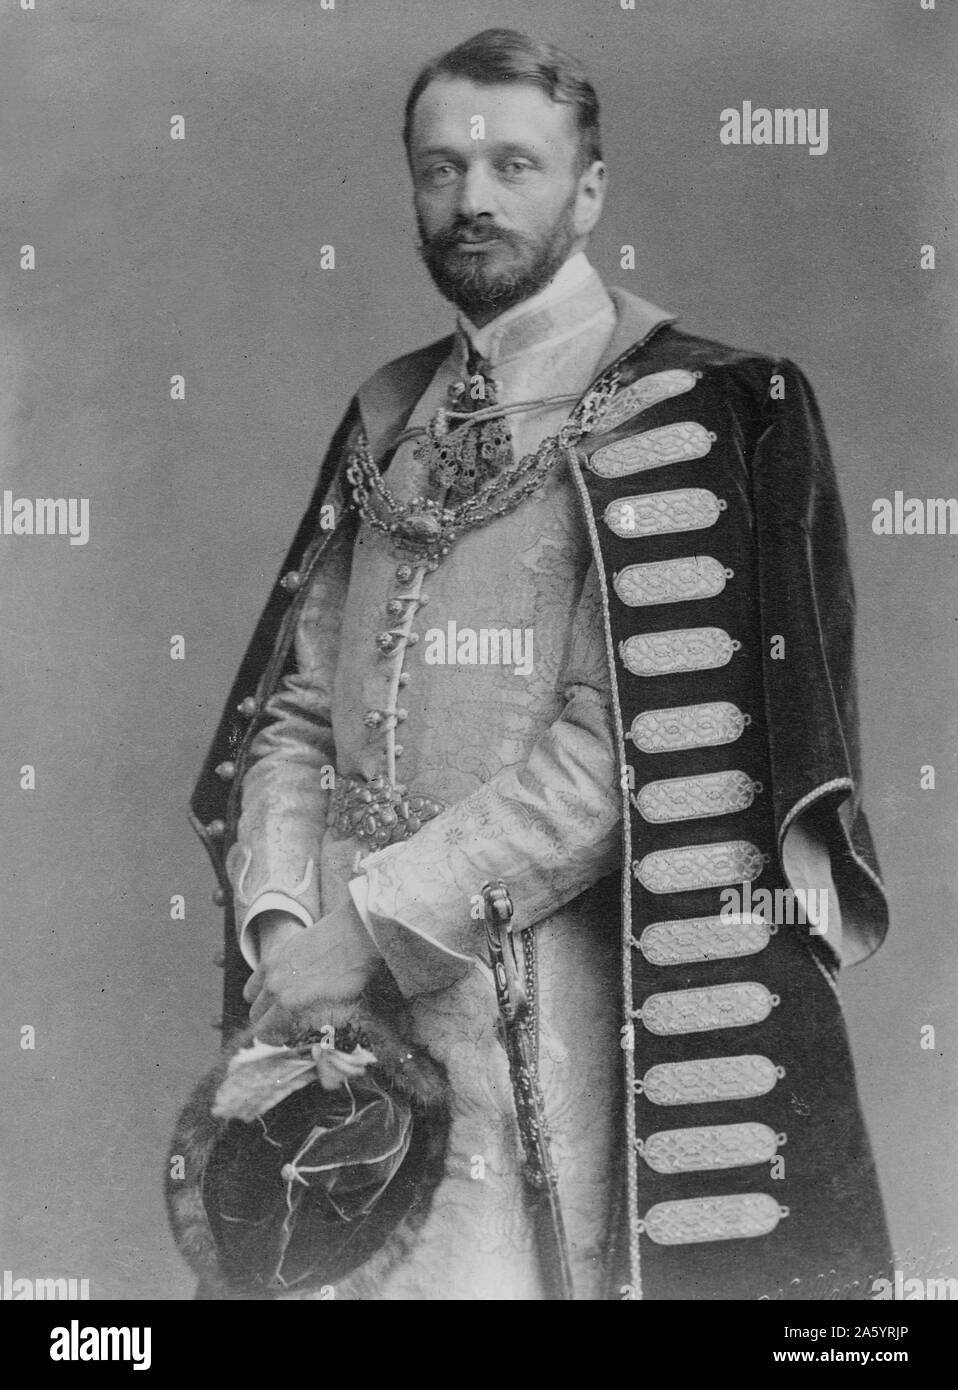 Comte Gyula Andrássy (8 mars 1823 - 18 février 1890) était un homme d'État hongrois, qui a servi comme Premier Ministre de la Hongrie (1867Ñ1871) et par la suite en tant que Ministre des affaires étrangères de l'Autriche-Hongrie (1871Ñ1879). Banque D'Images